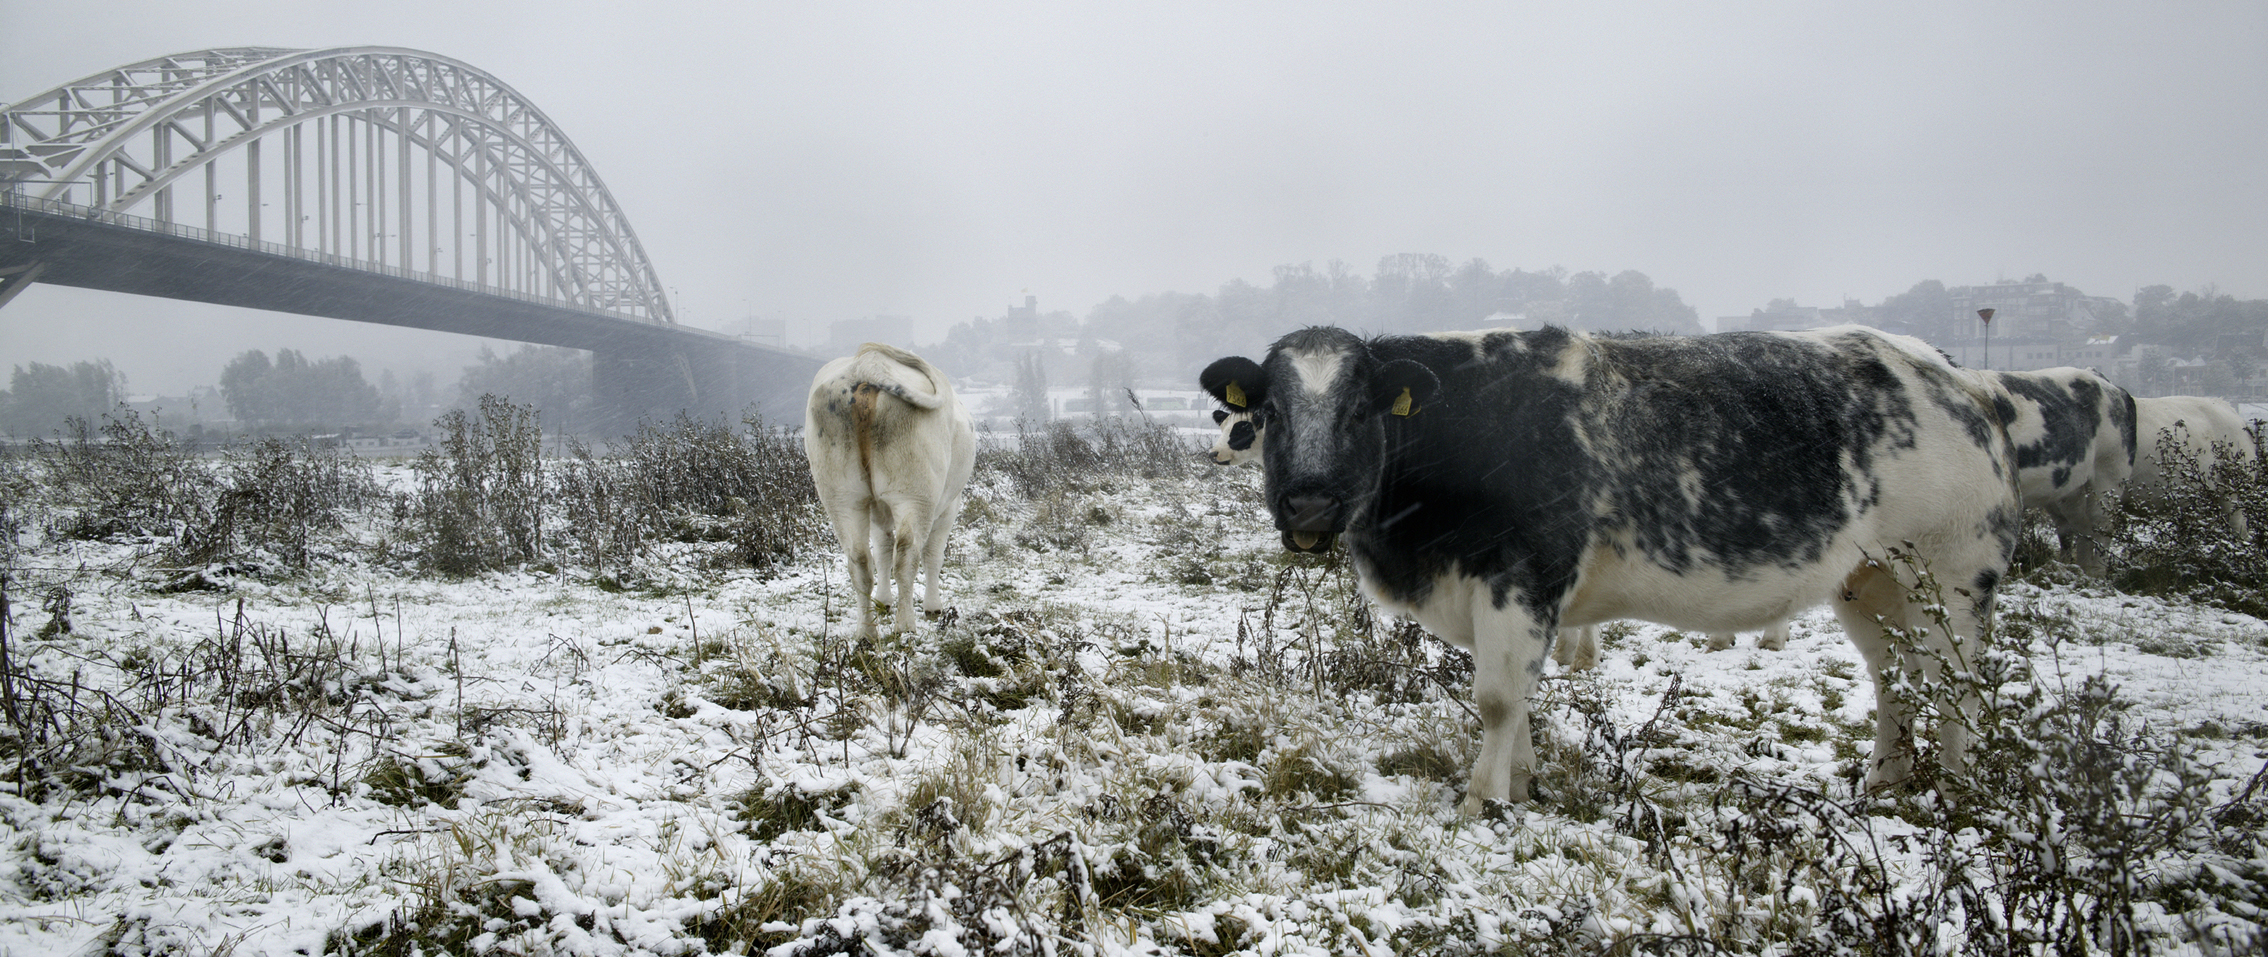 Koeien in sneeuw 2.jpg